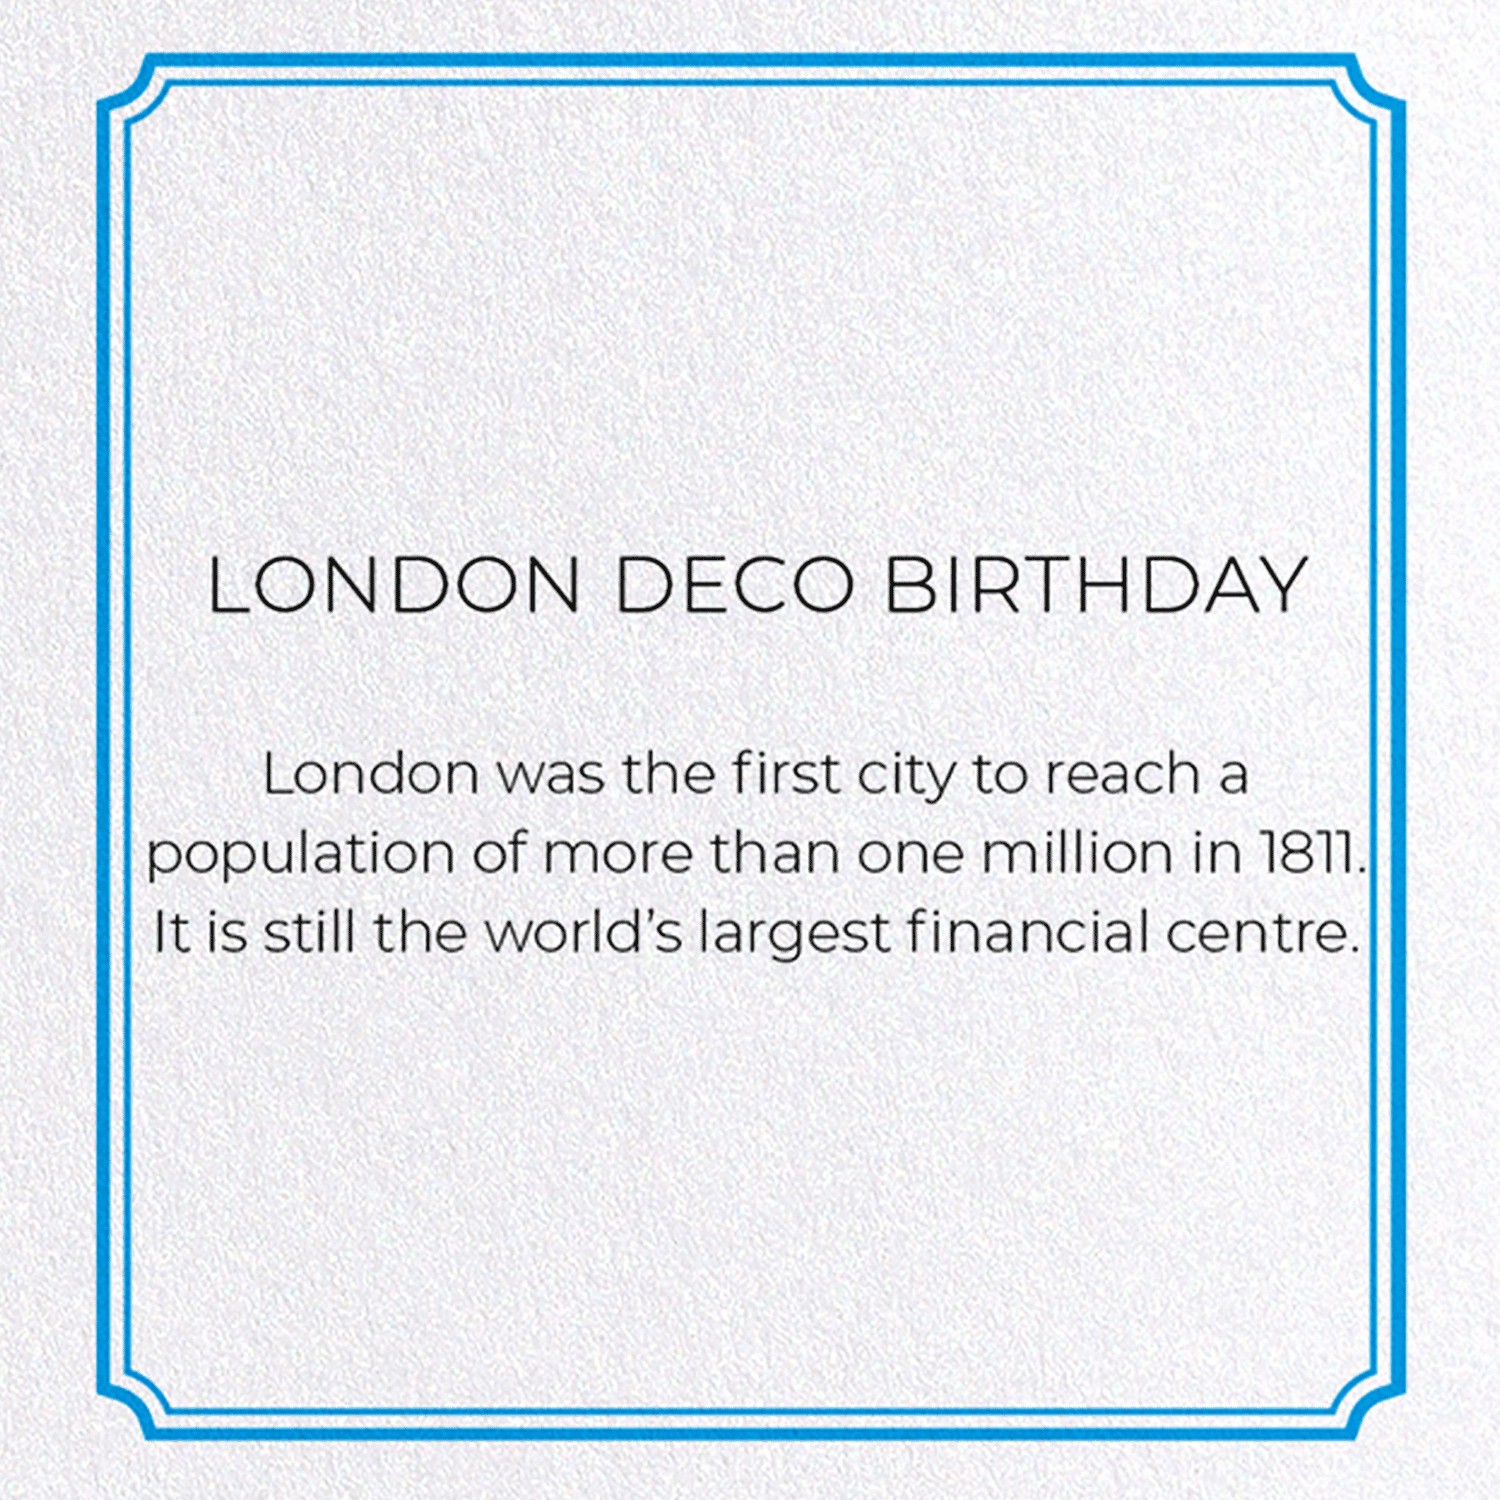 LONDON DECO BIRTHDAY